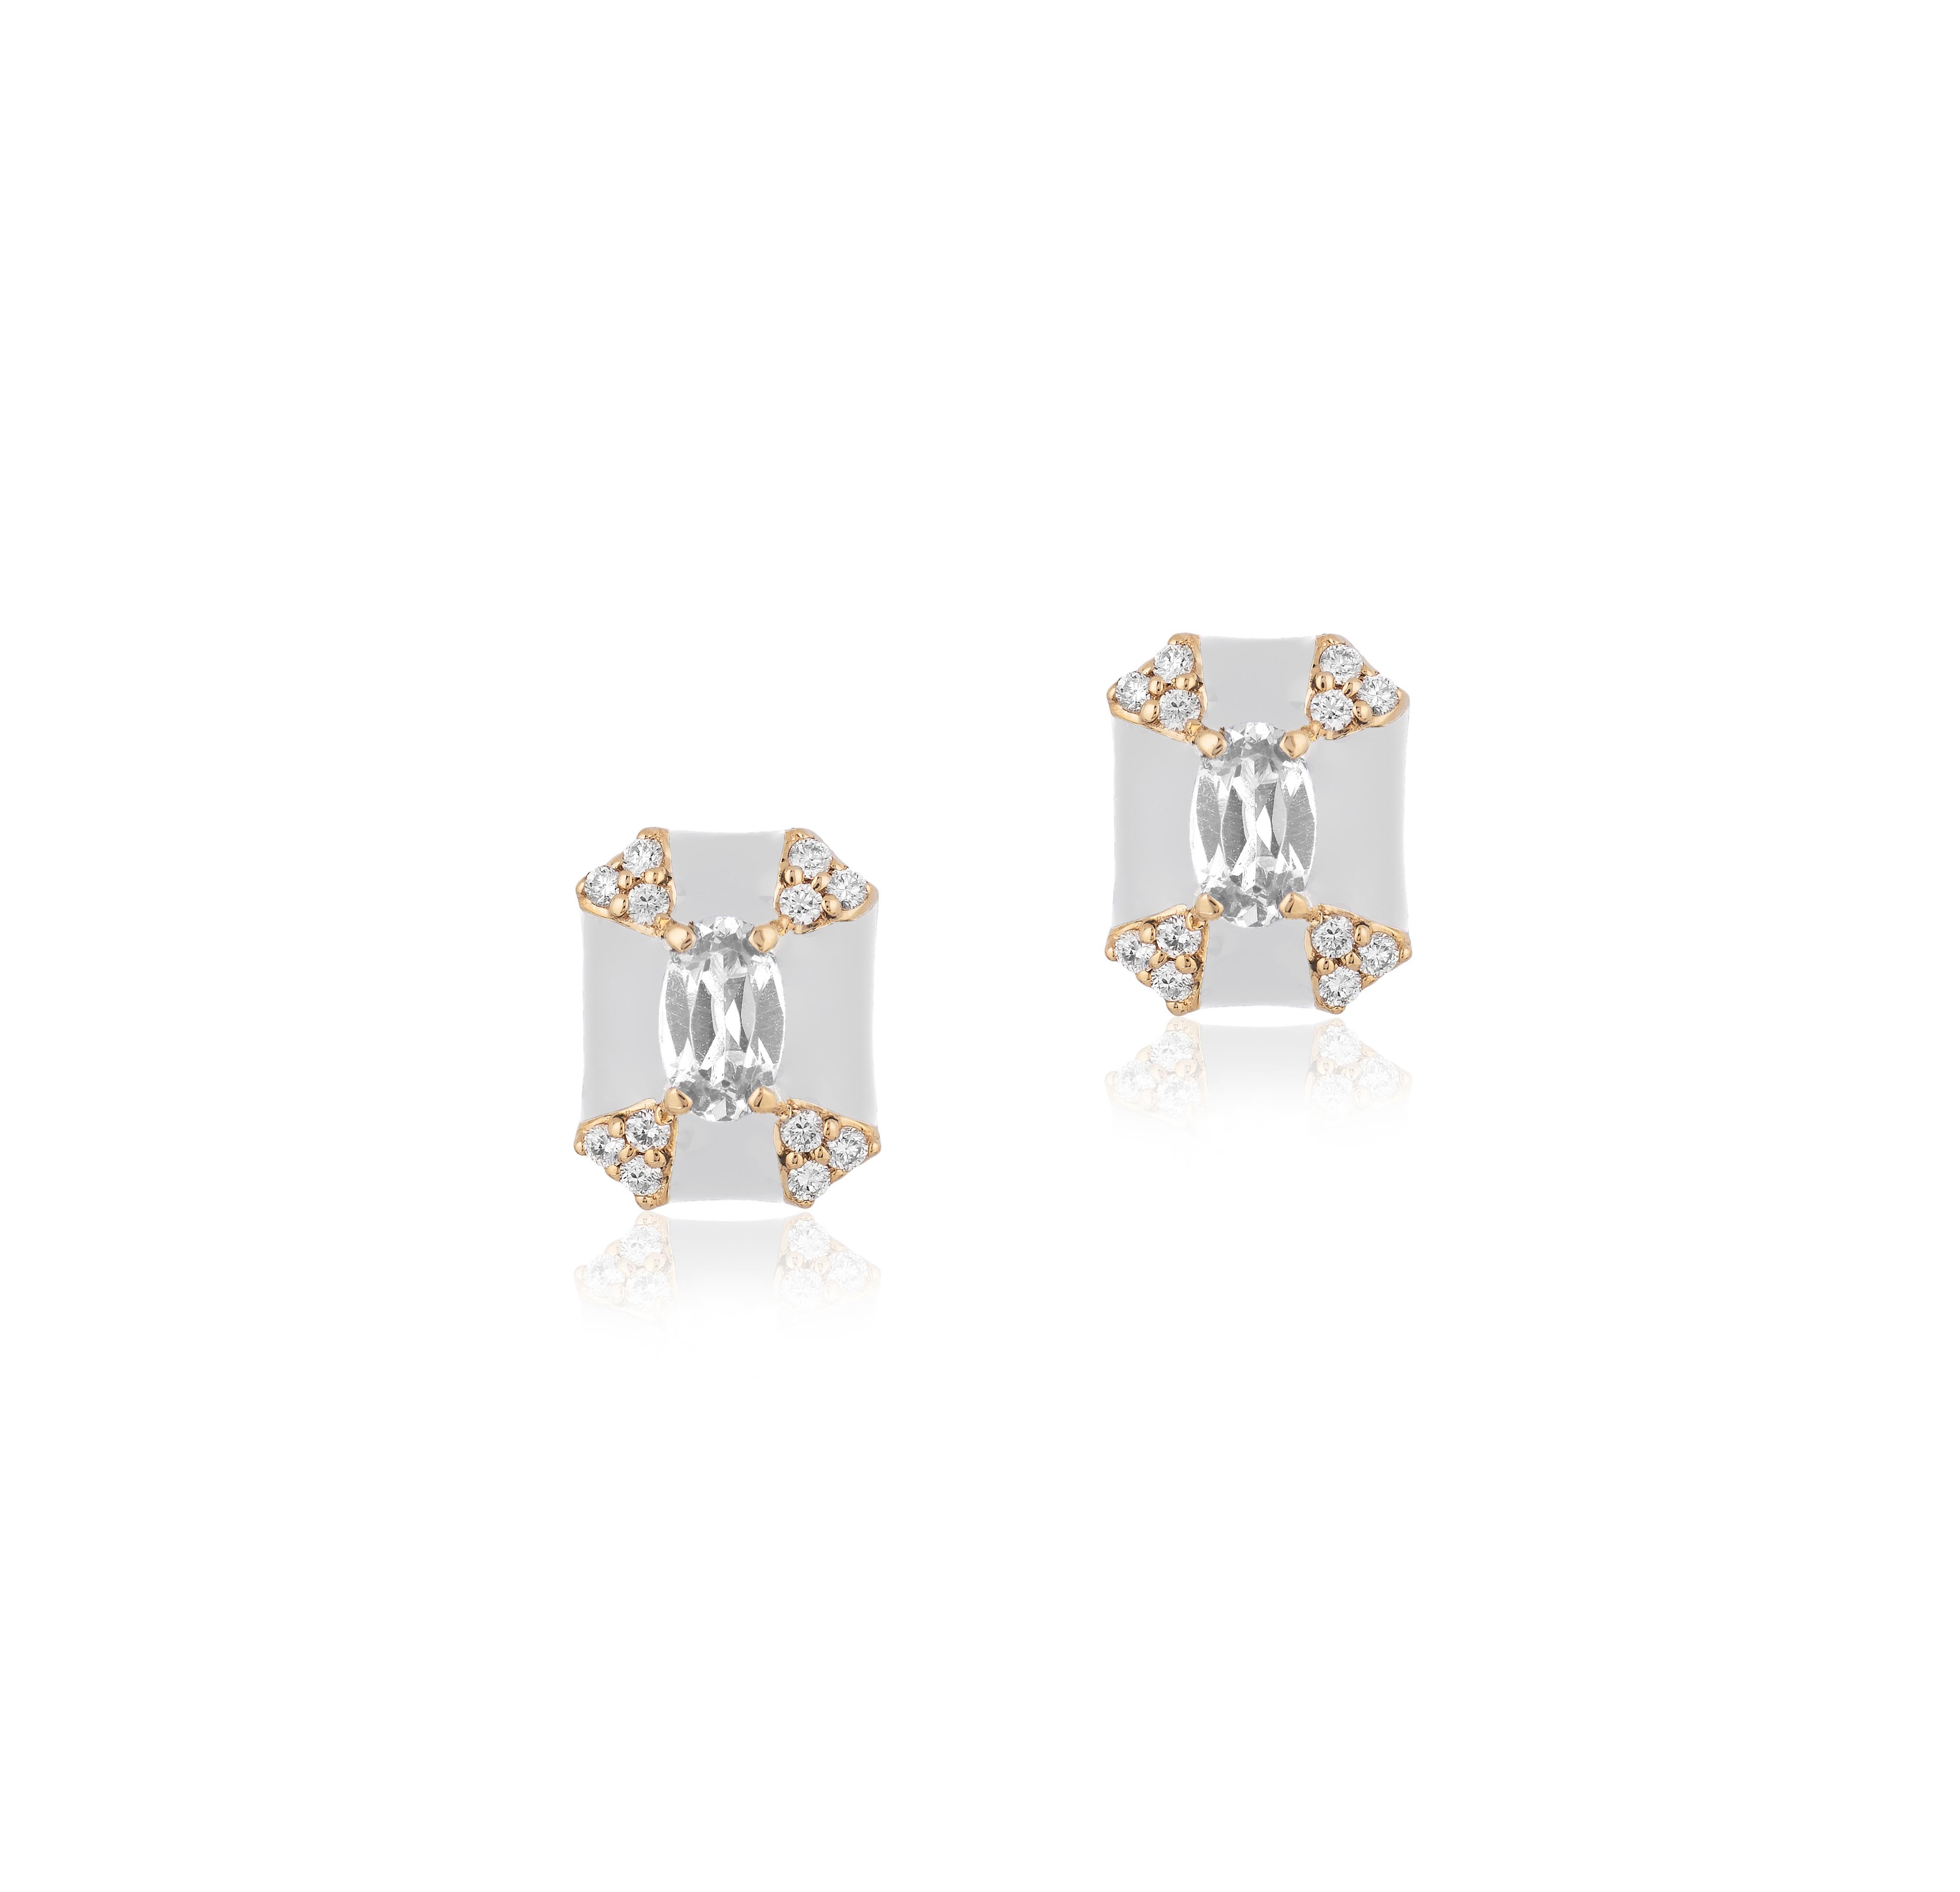 Queen' Achteckige weiße Emaille-Ohrstecker mit Diamanten aus 18K Gelbgold
Diamanten: G-H/ VS; Ca. Wt: 0.62 Karat